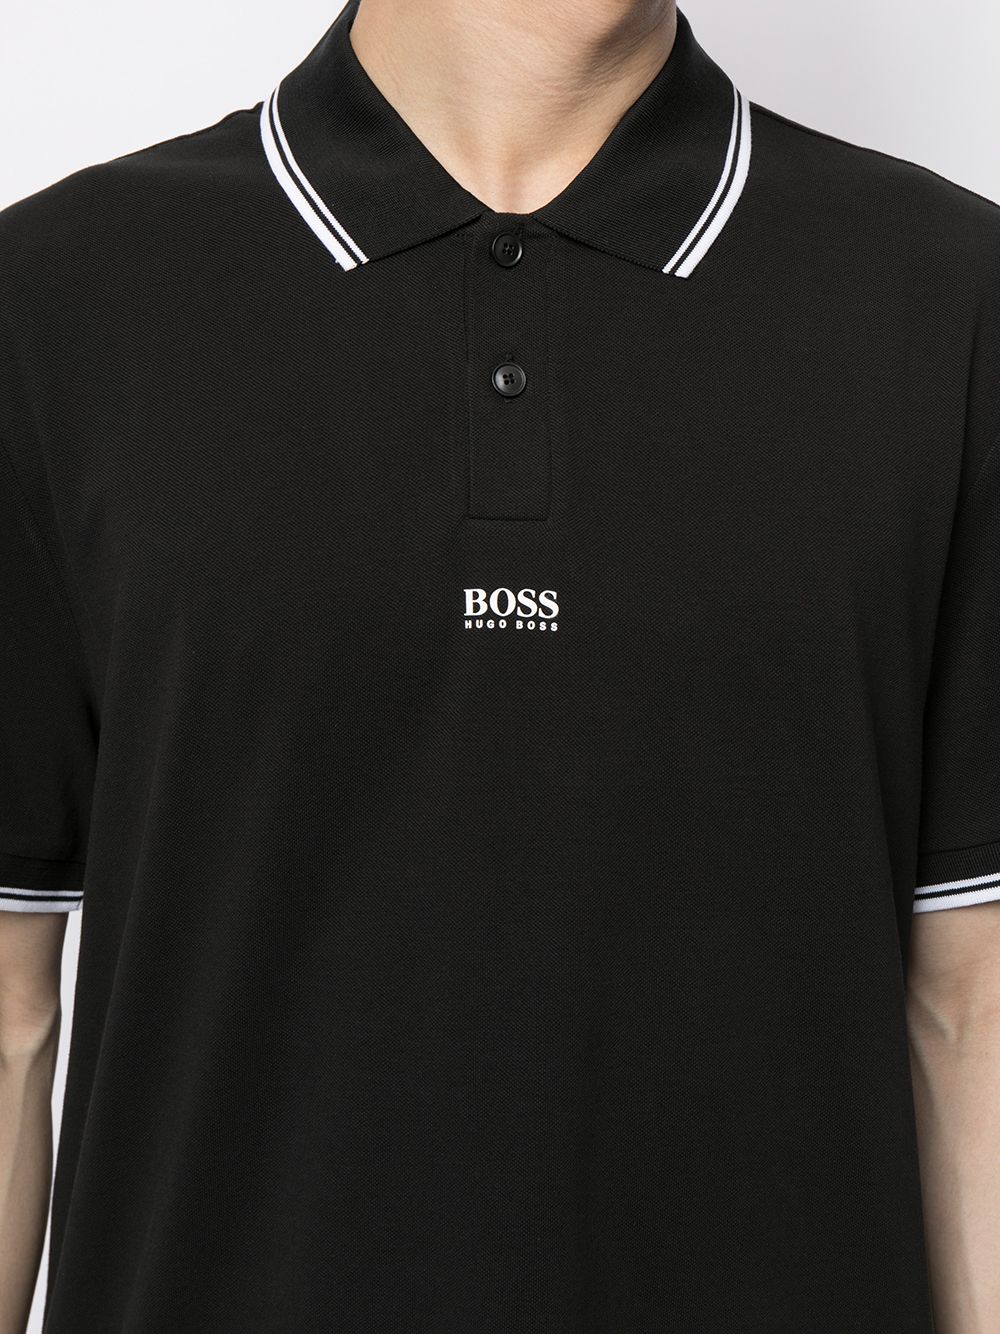 BOSS Striped Centre Logo Polo Shirt Black - MAISONDEFASHION.COM